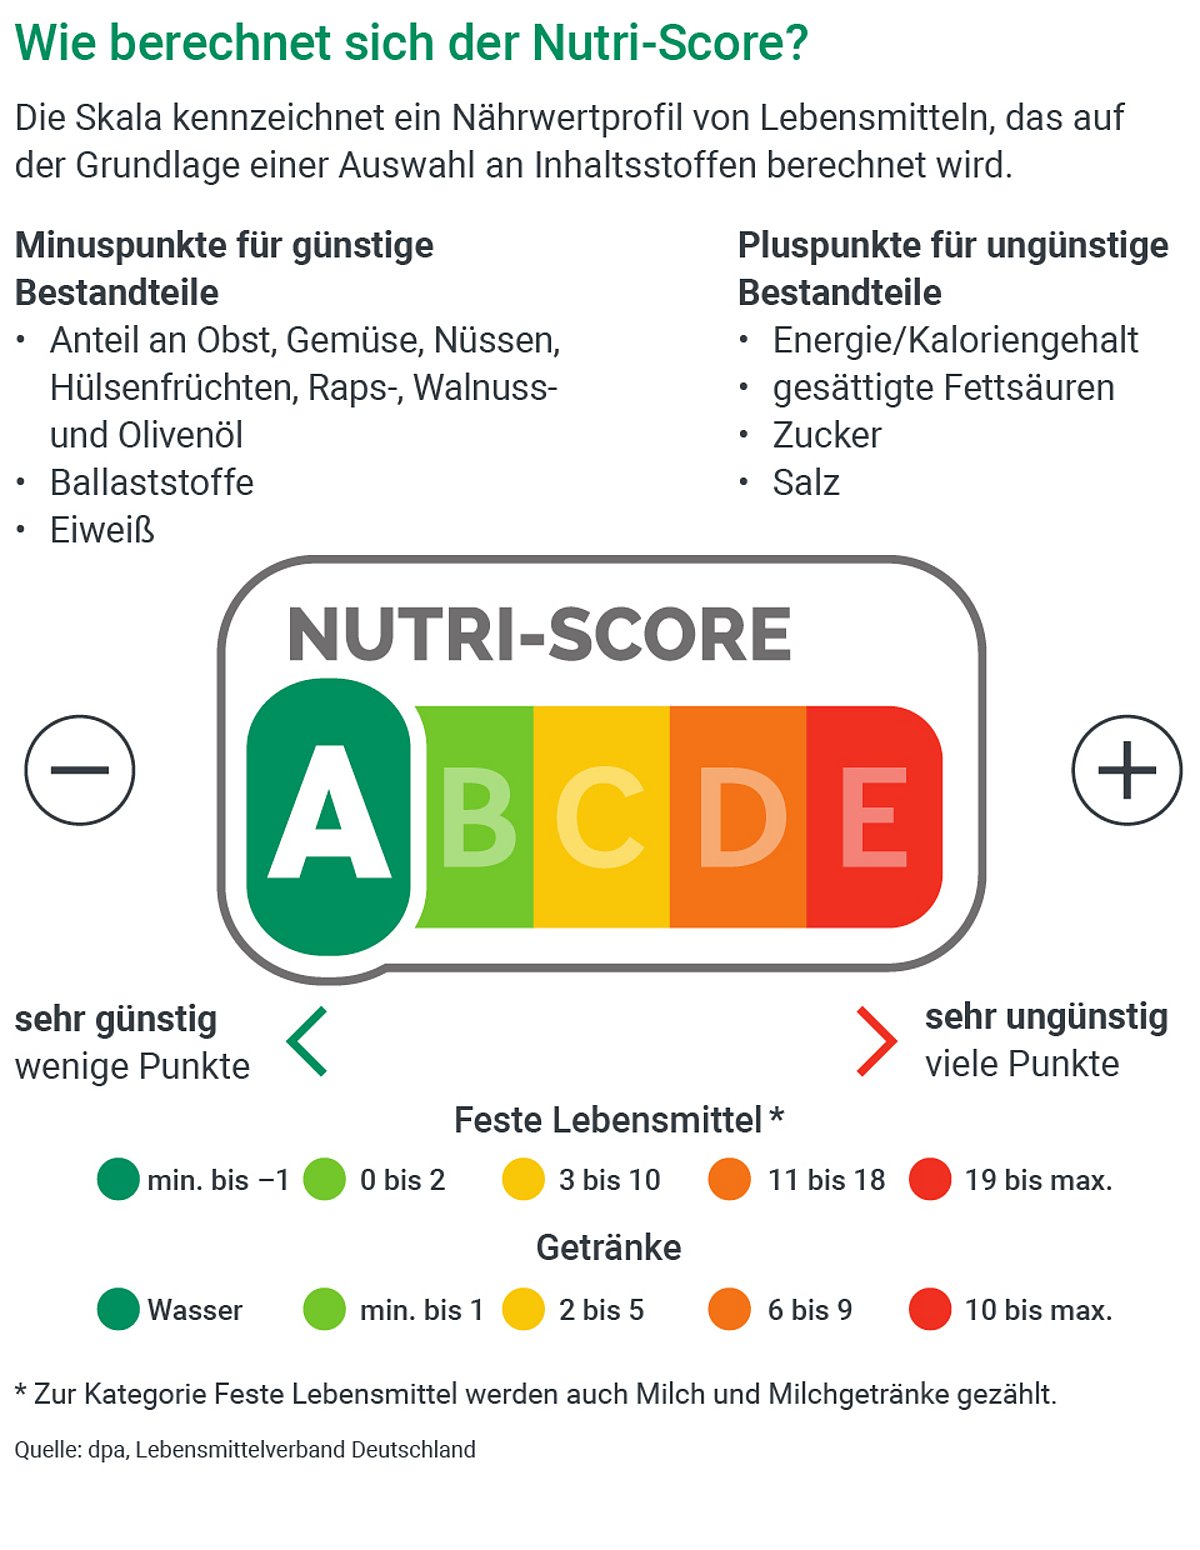 Infografik: Wie berechnet sich der Nutri-Score?